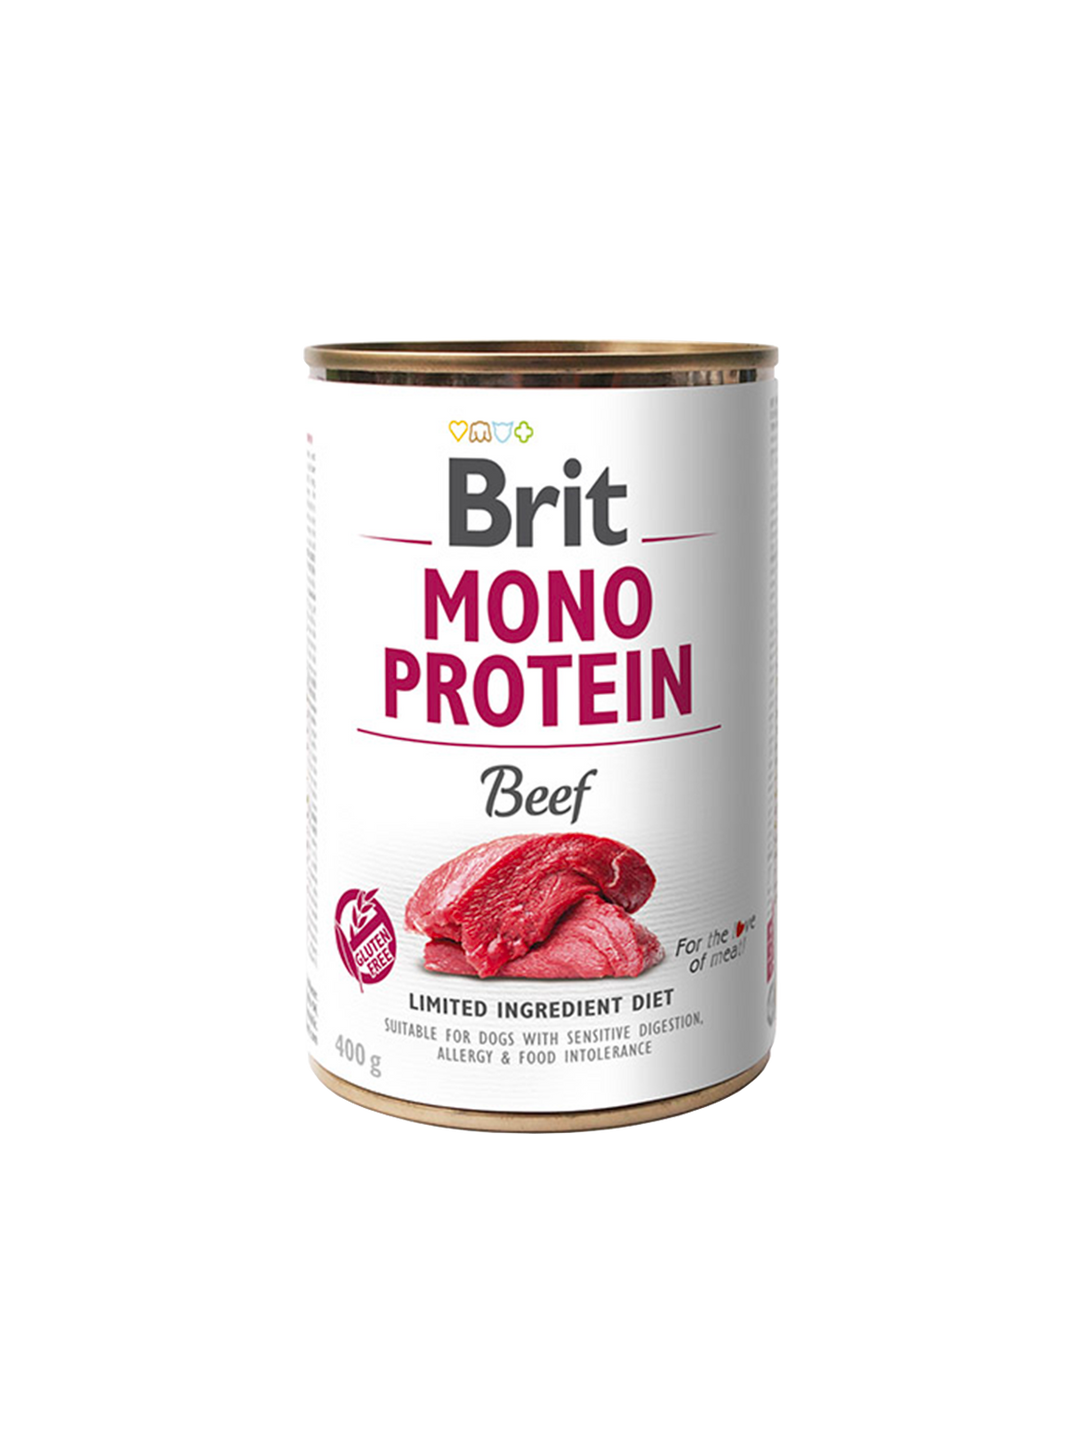 Brit Mono Protein tins 400g - Beef